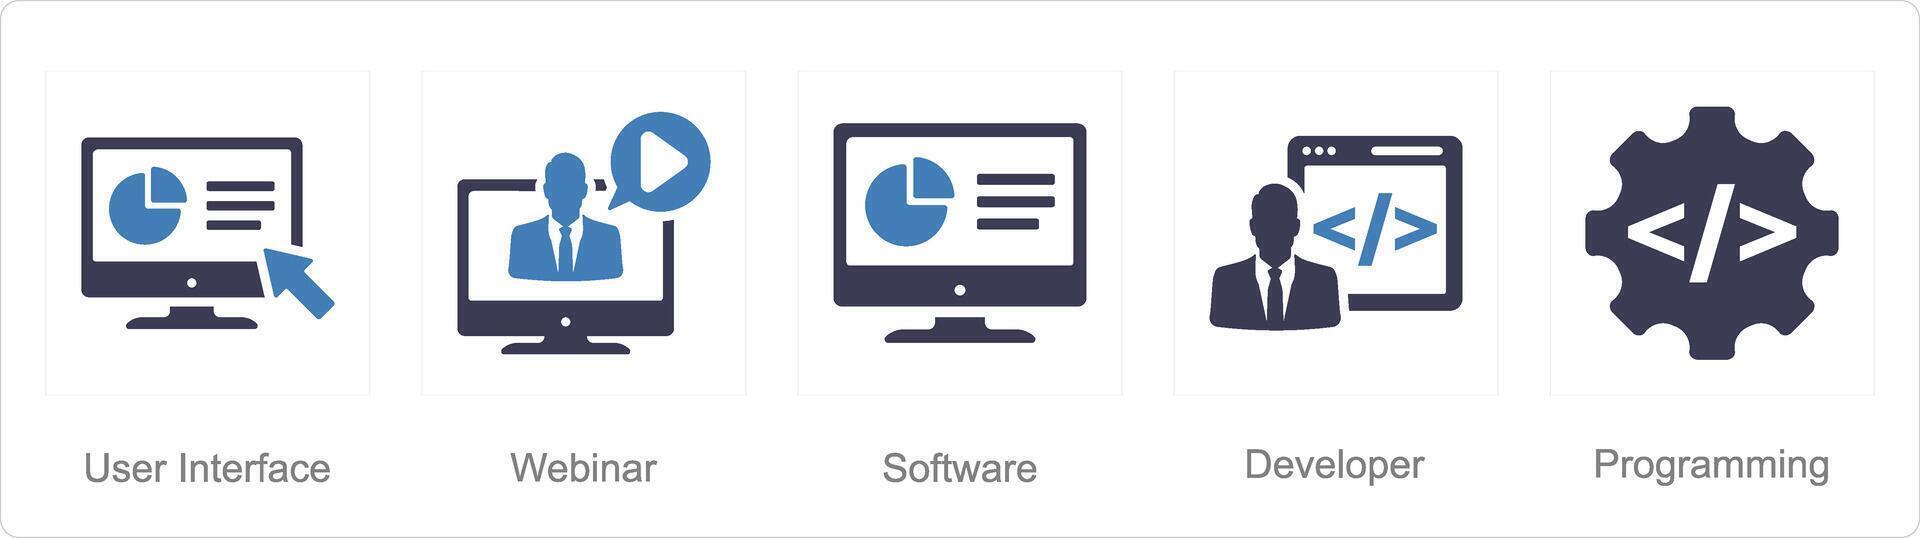 een reeks van 5 internet computer pictogrammen net zo gebruiker koppel, webinar, software vector